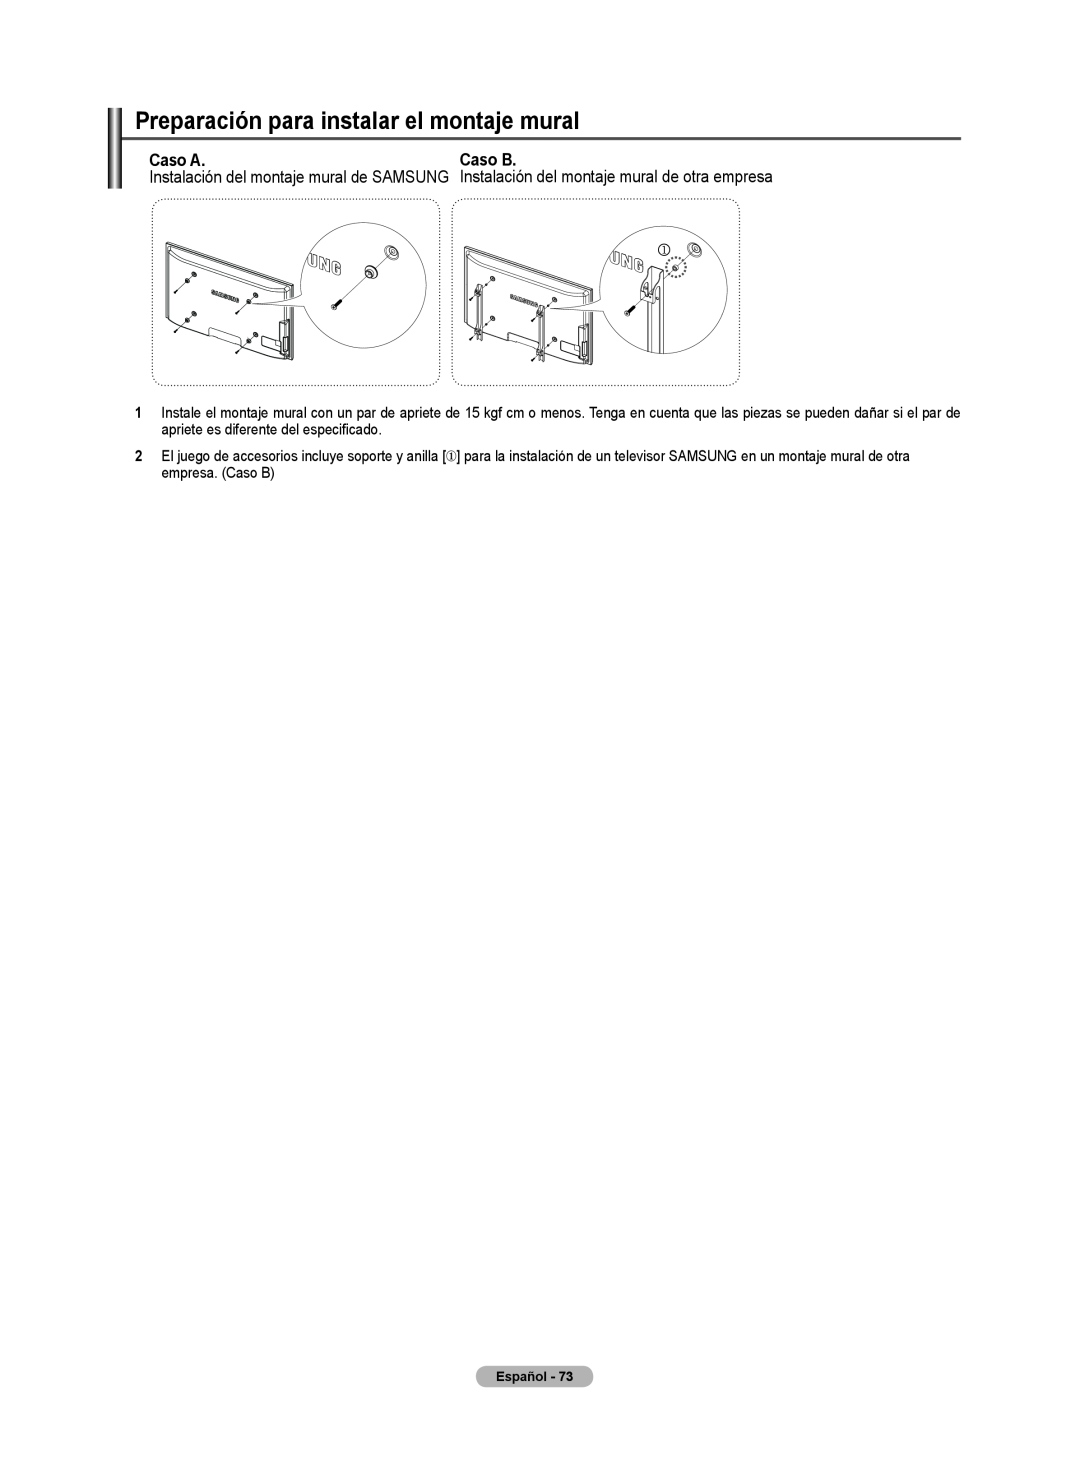 Samsung 510 user manual Preparación para instalar el montaje mural, Caso A, Caso B 